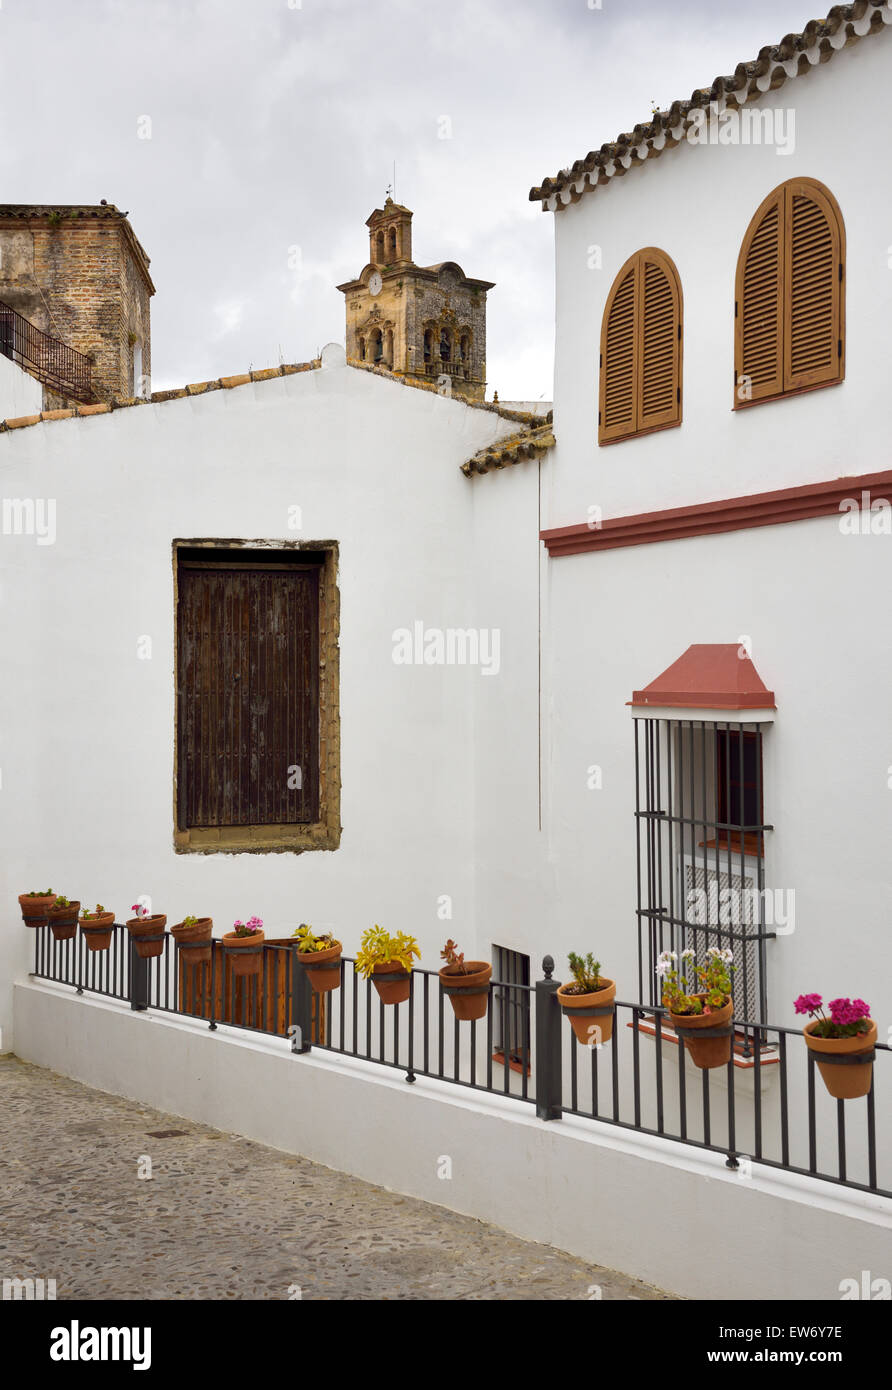 Kirche des Heiligen Petrus Glockenturm mit weiß getünchten Häusern und Blumen in Ton Töpfe Arcos De La Frontera Spanien Stockfoto